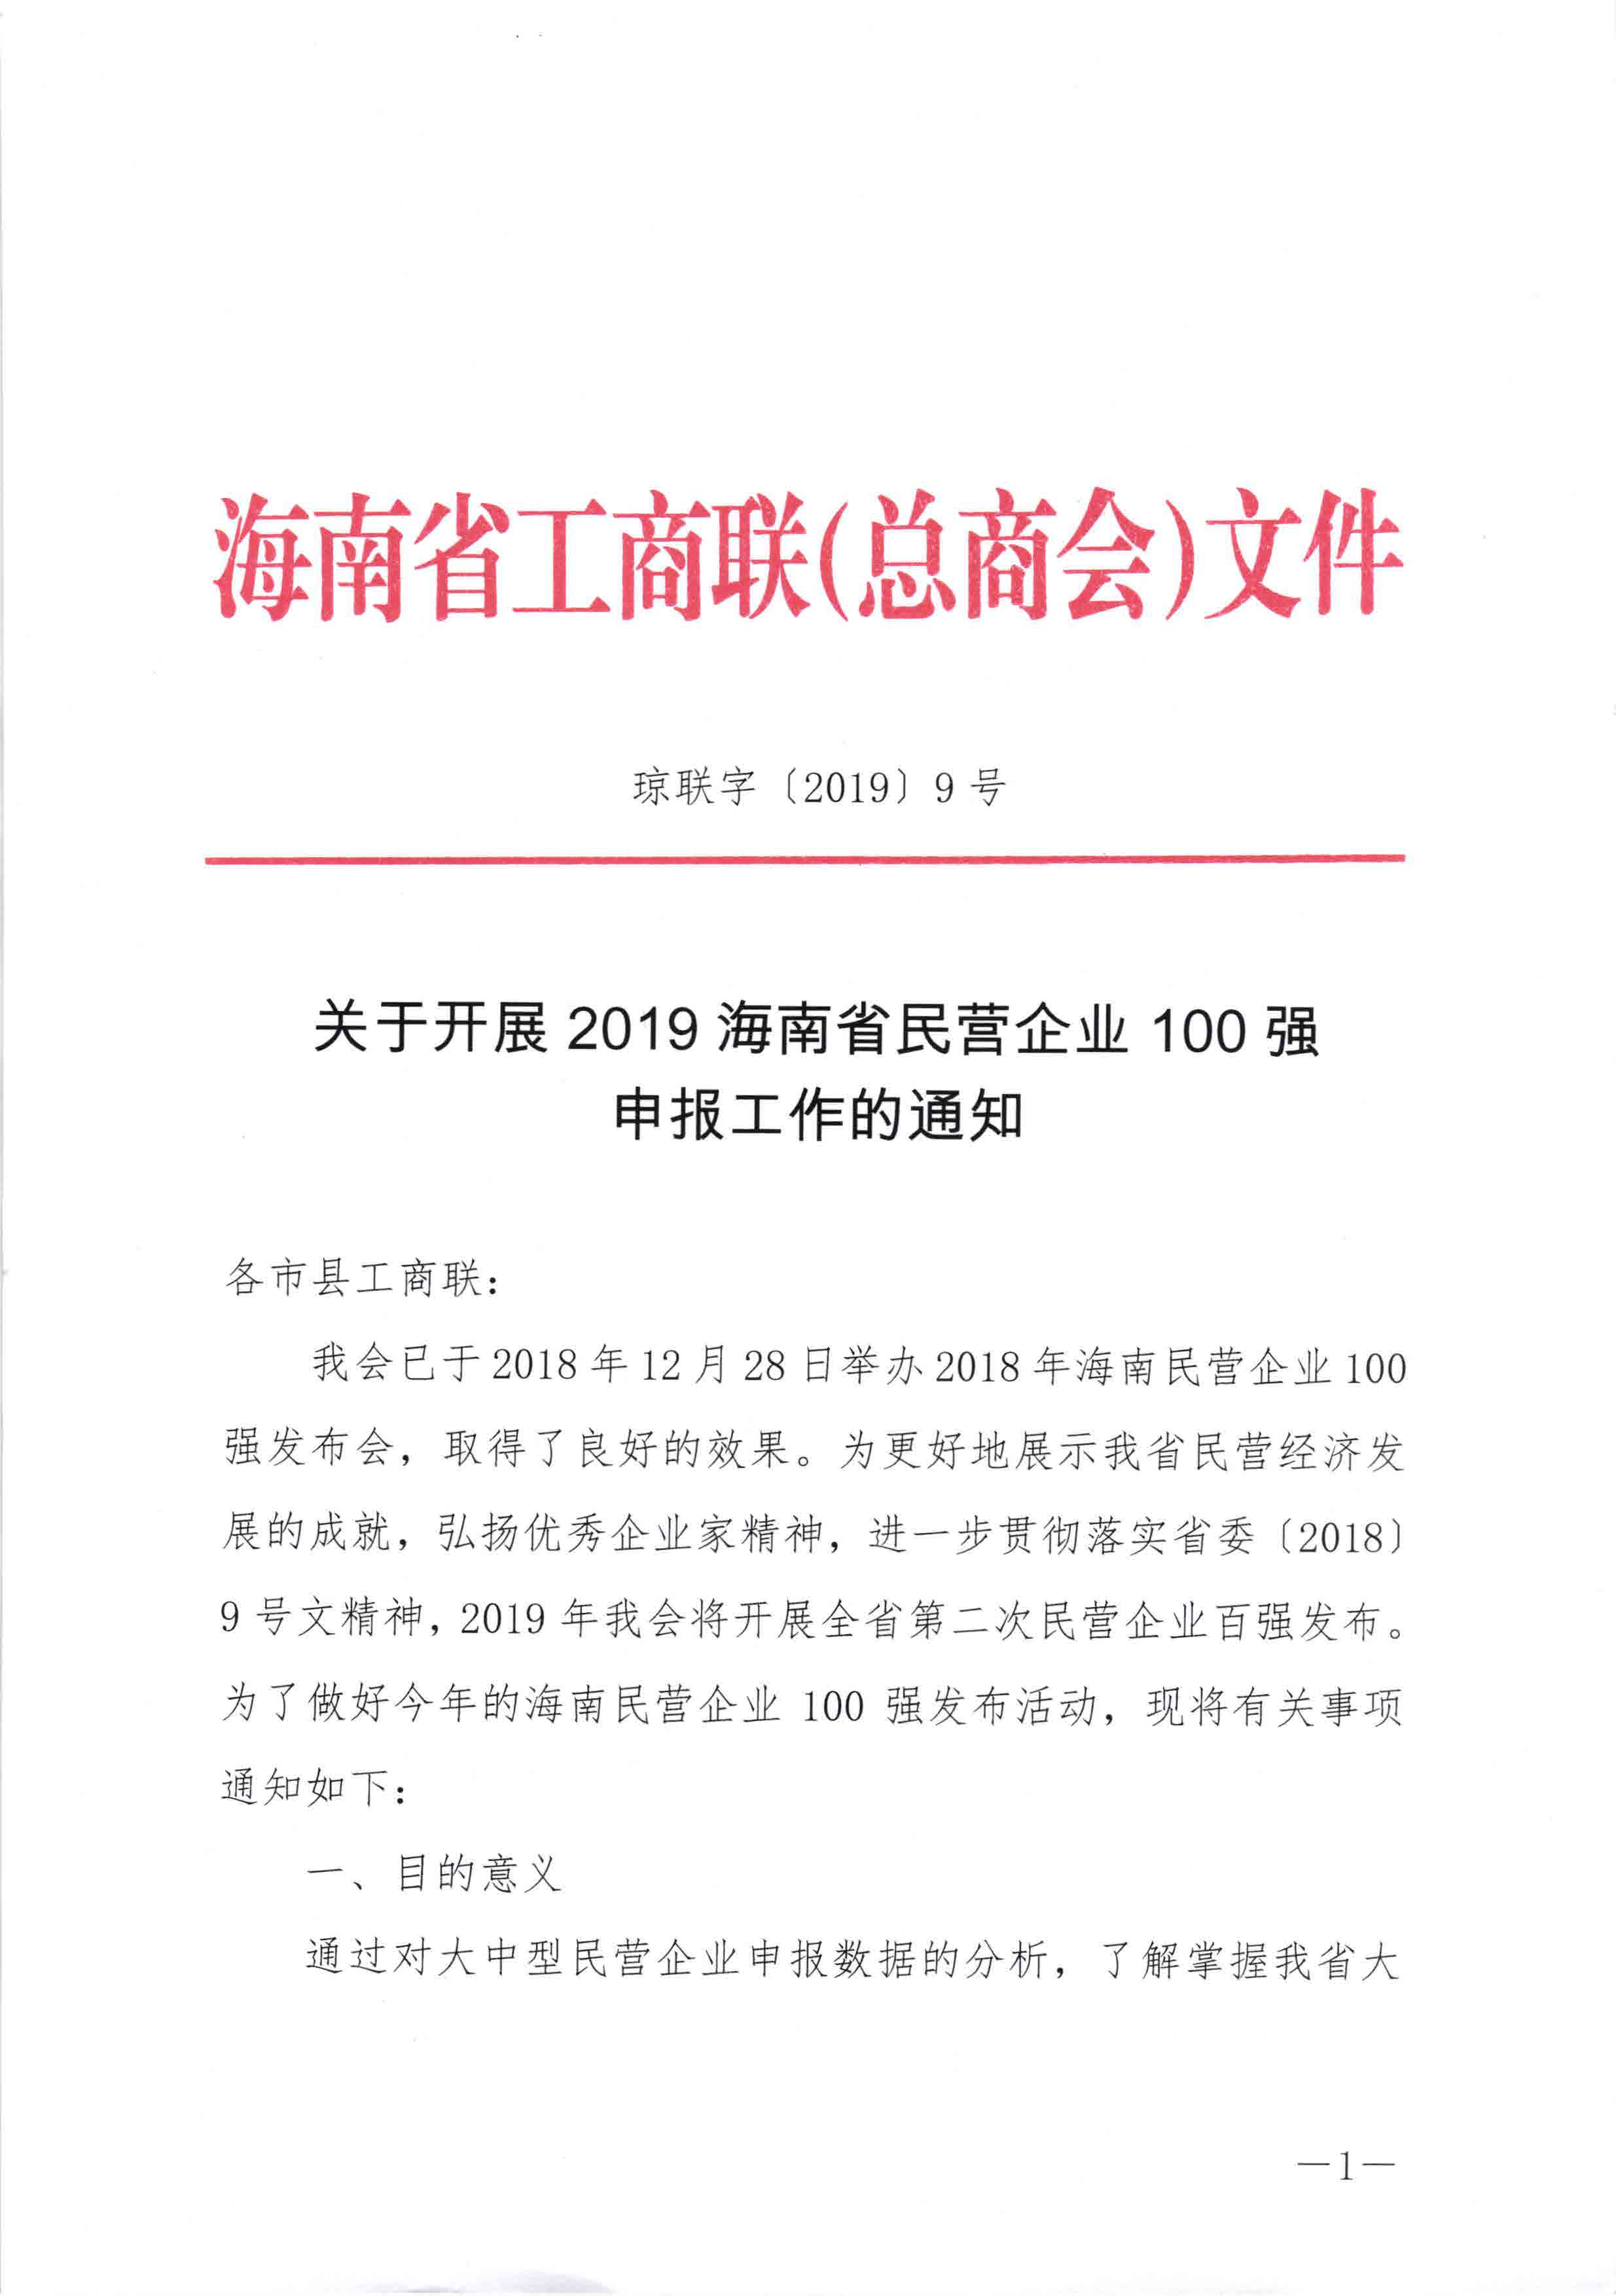 关于开展2019海南民营企业100强申报工作的通知_页面_1